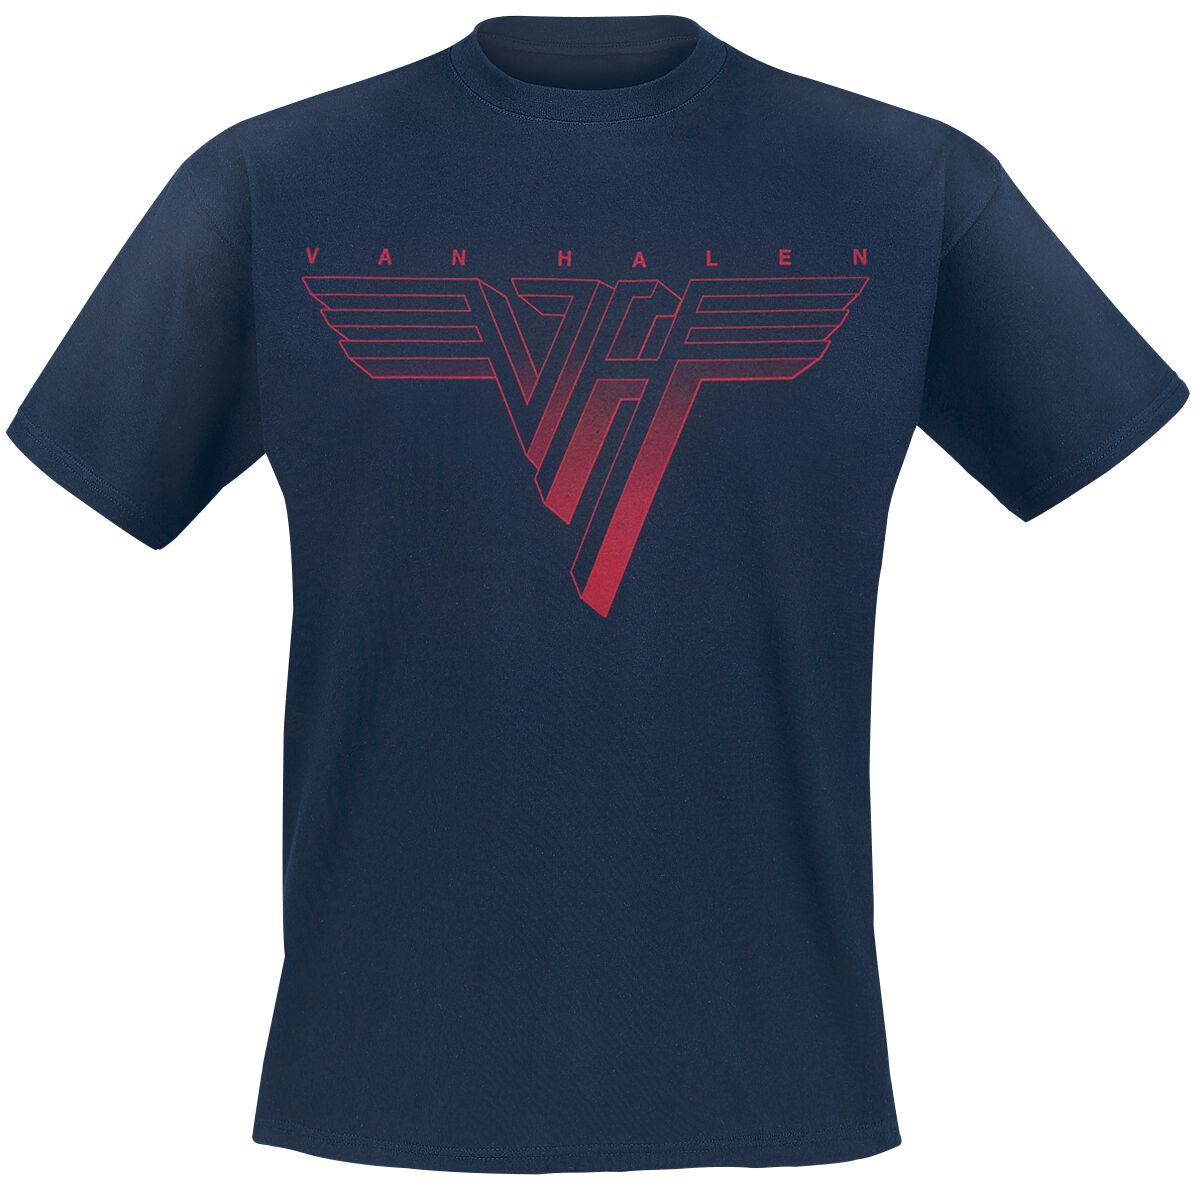 Van Halen Classic Red Logo T-Shirt navy in L